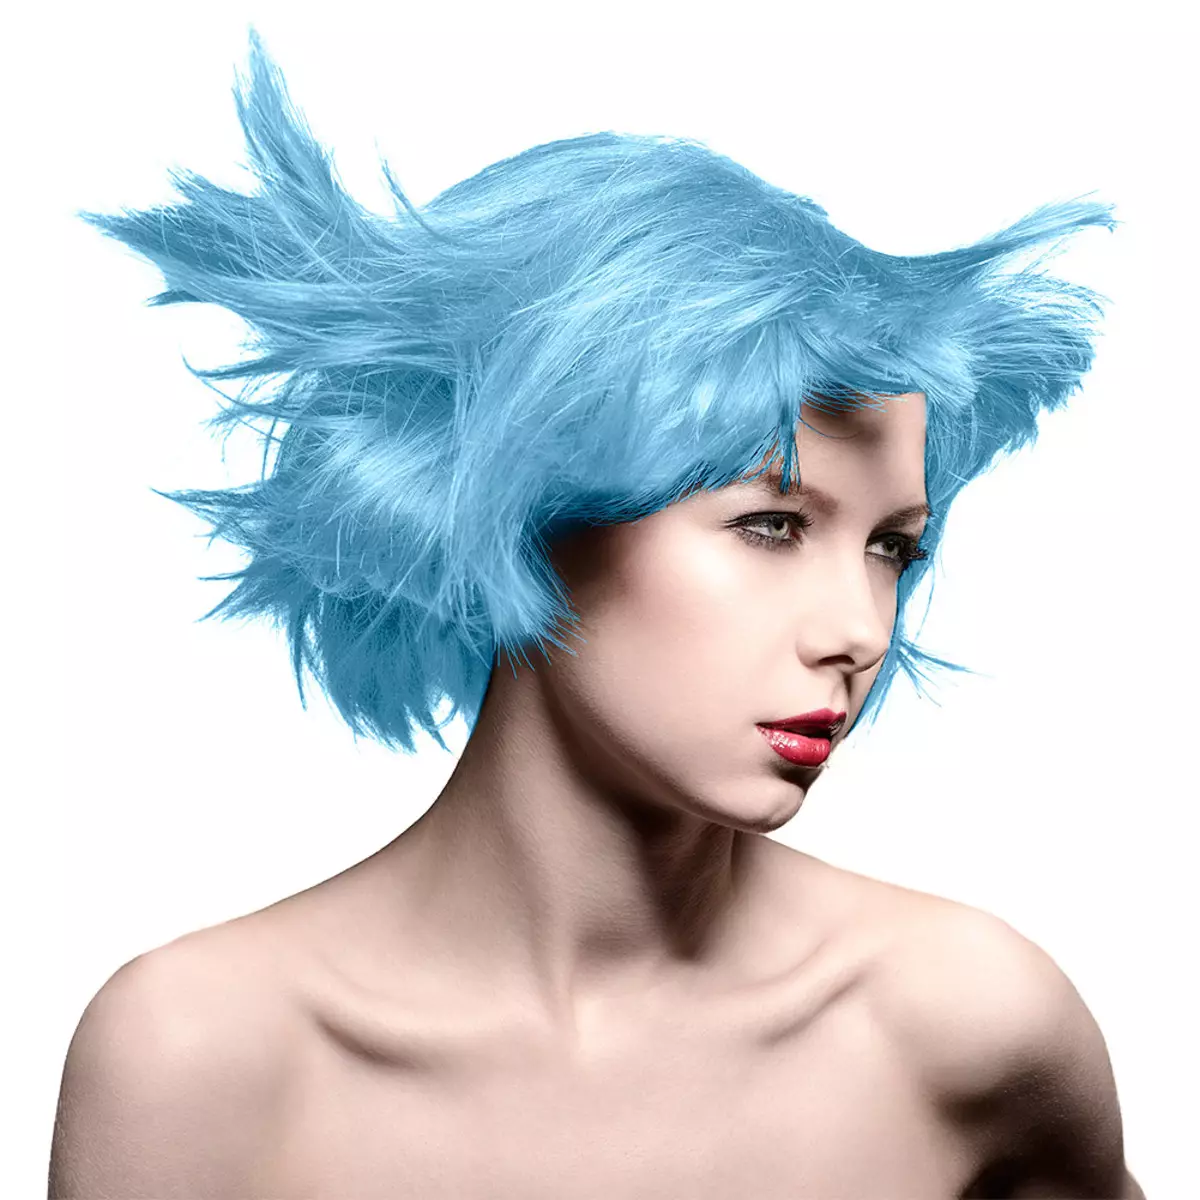 צבע שיער כחול: סקירה של צבעי שיער עמיד עם צבת כחול, מ כחול בהיר לגוונים שחורים וכחולים 5402_28